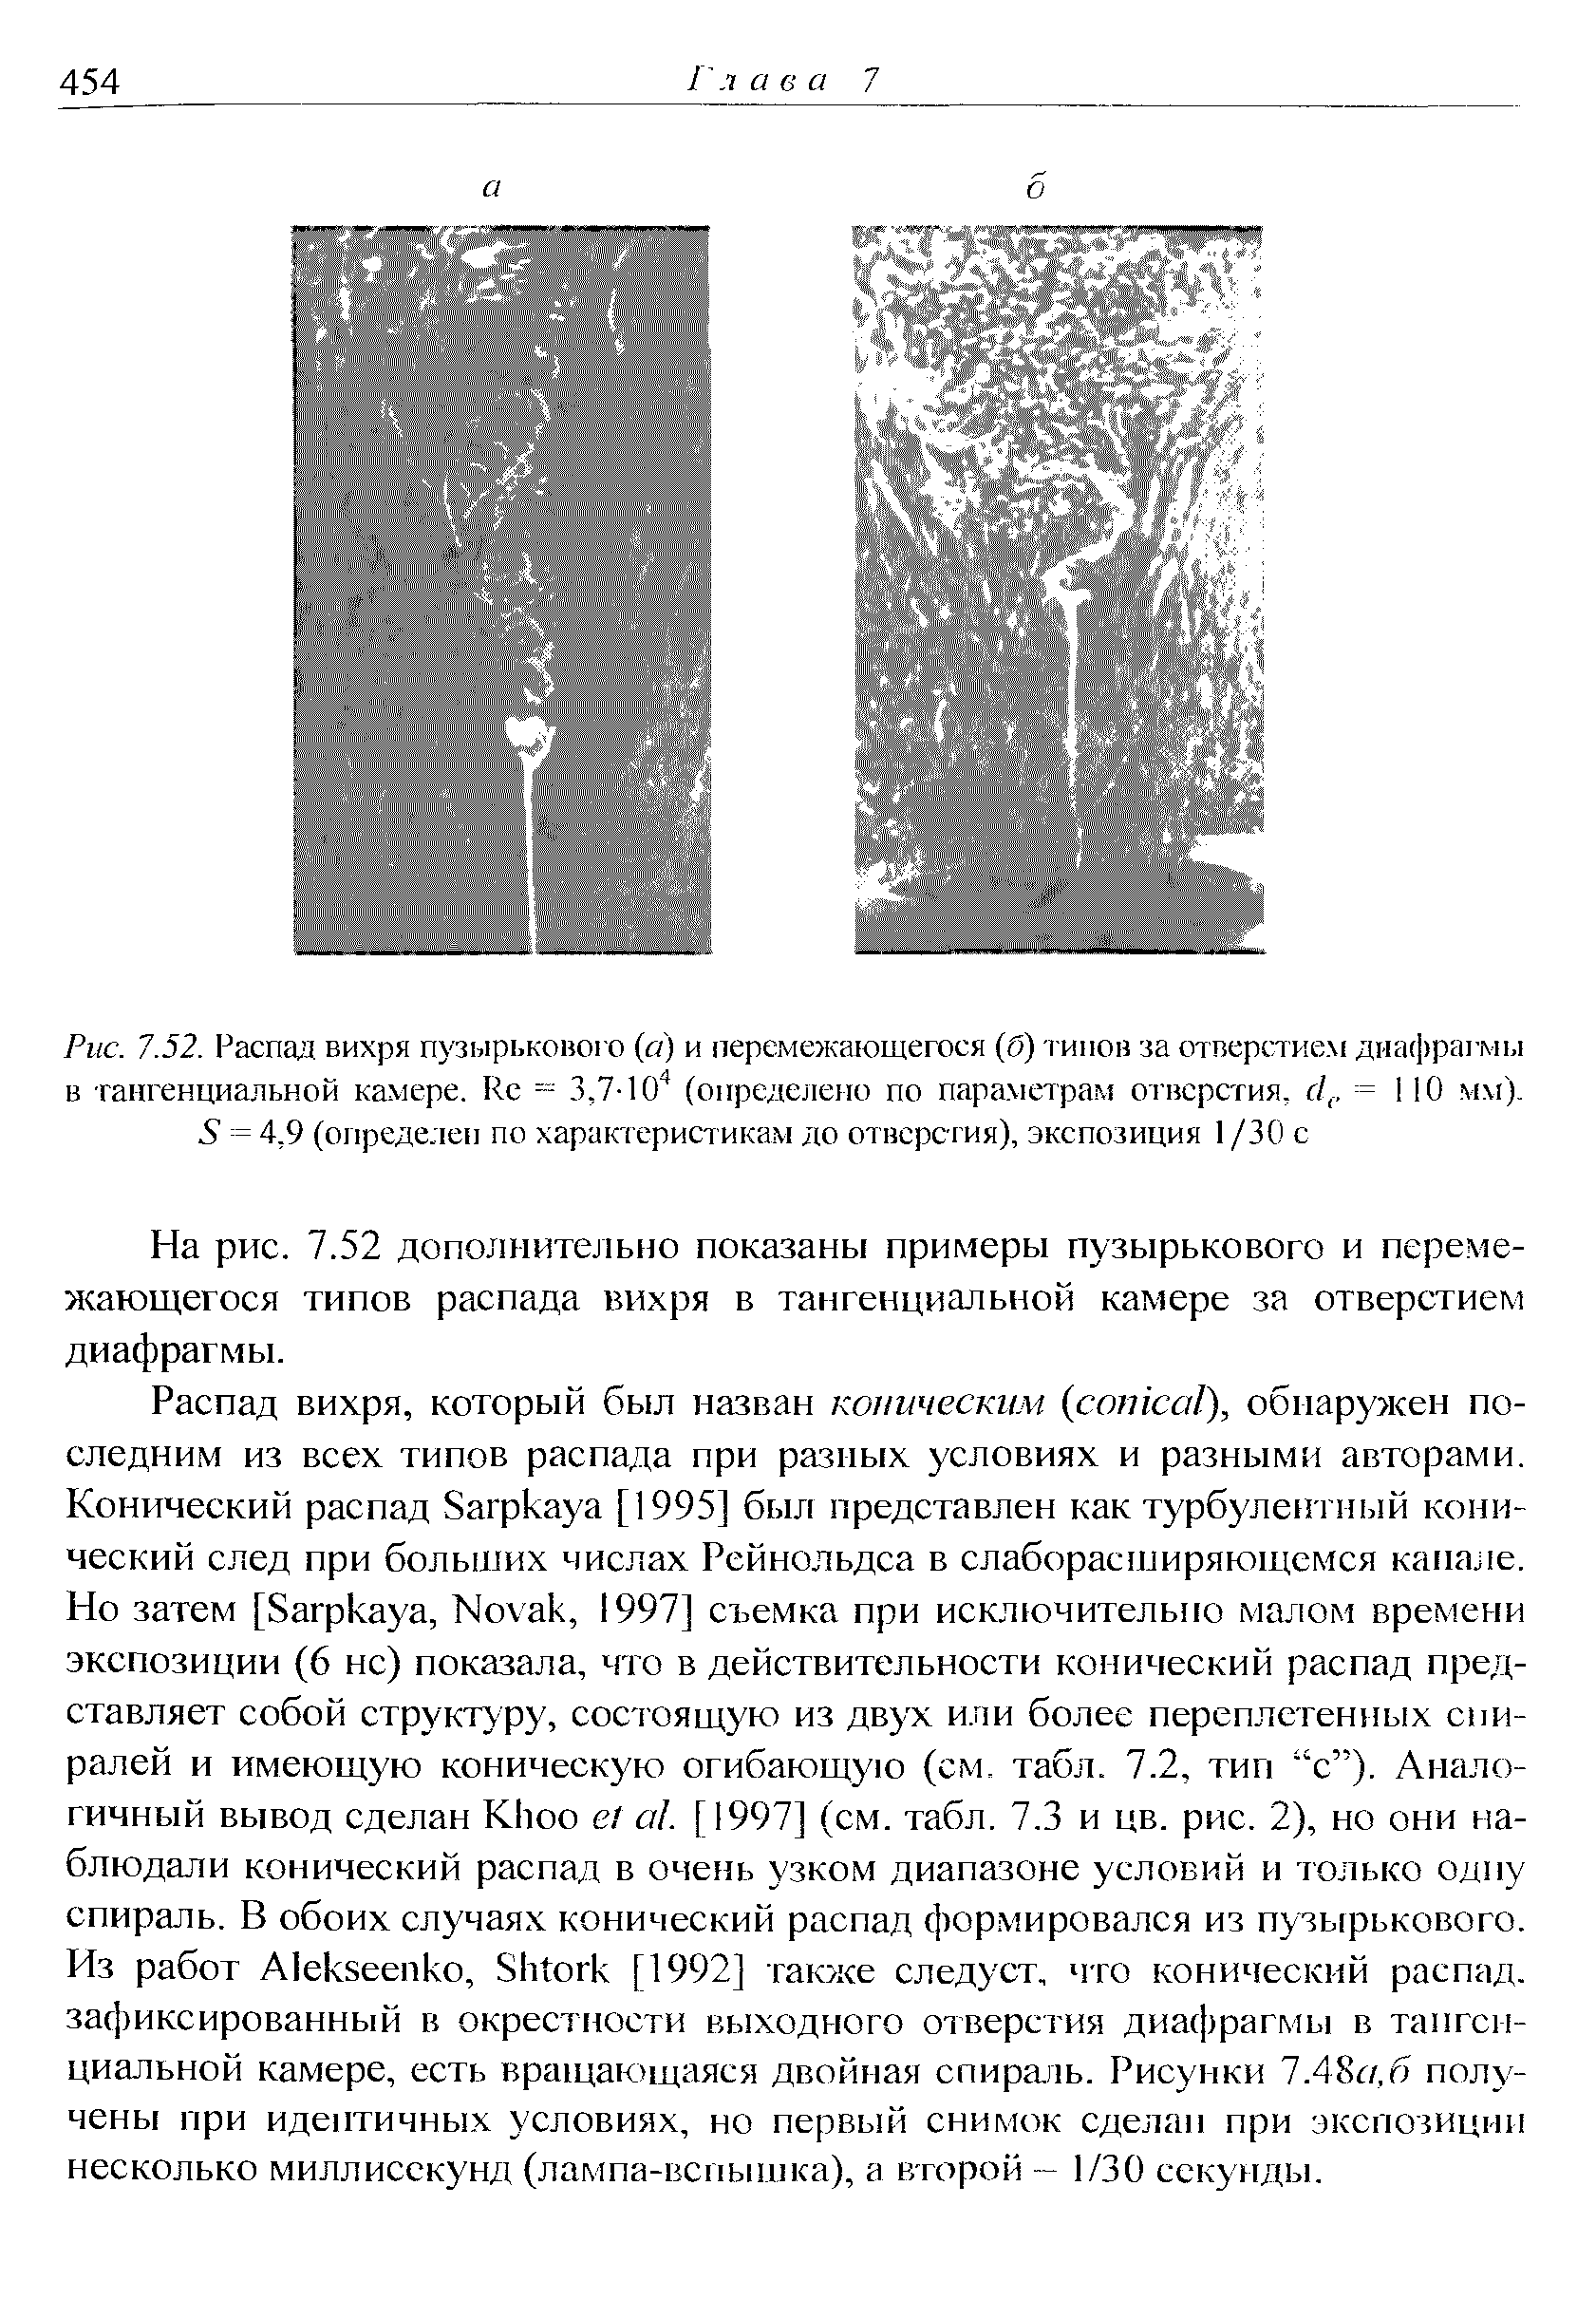 Рис. 7.52. Распад вихря пузырькового (а) и перемежающегося (б) типов за отверстием диафрагмы в <a href="/info/317545">тангенциальной камере</a>. Ке = 3,7-(определено по параметрам отверстия, с ,. = 110 мм). 6 = 4,9 (определен по характеристикам до отверстия), экспозиция I /30 с
